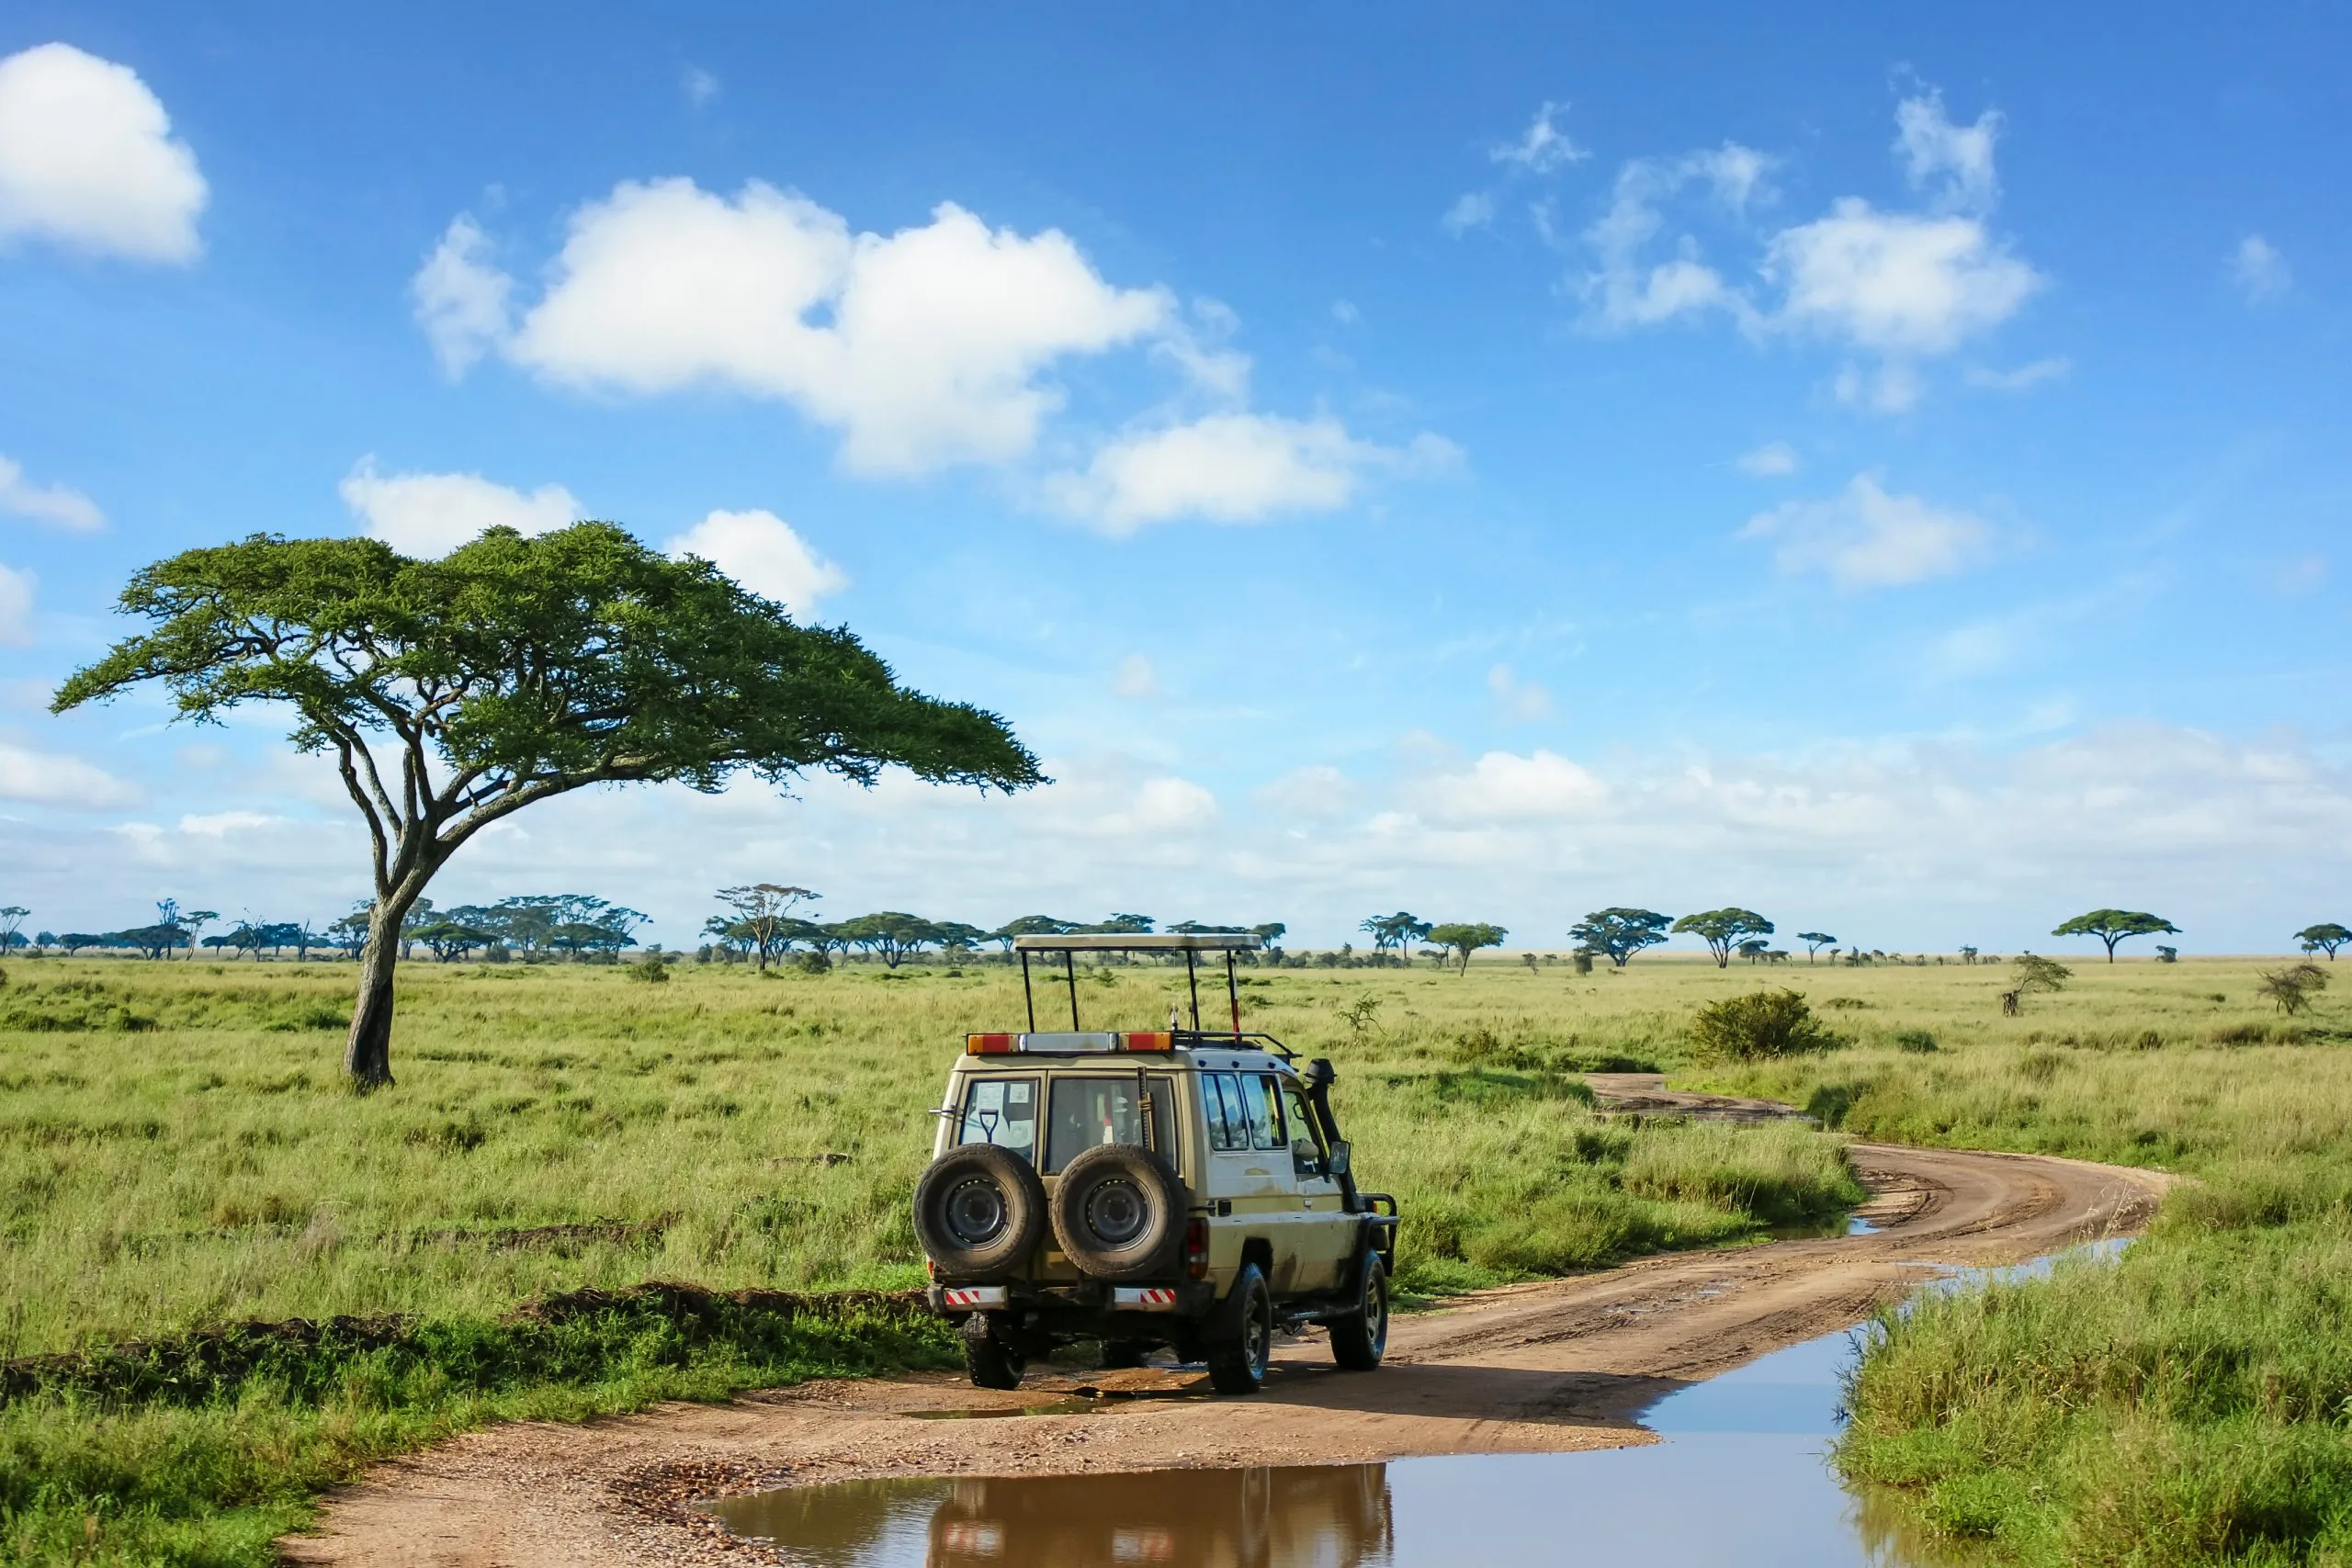 Paisagem de safari nas pastagens do Serengeti